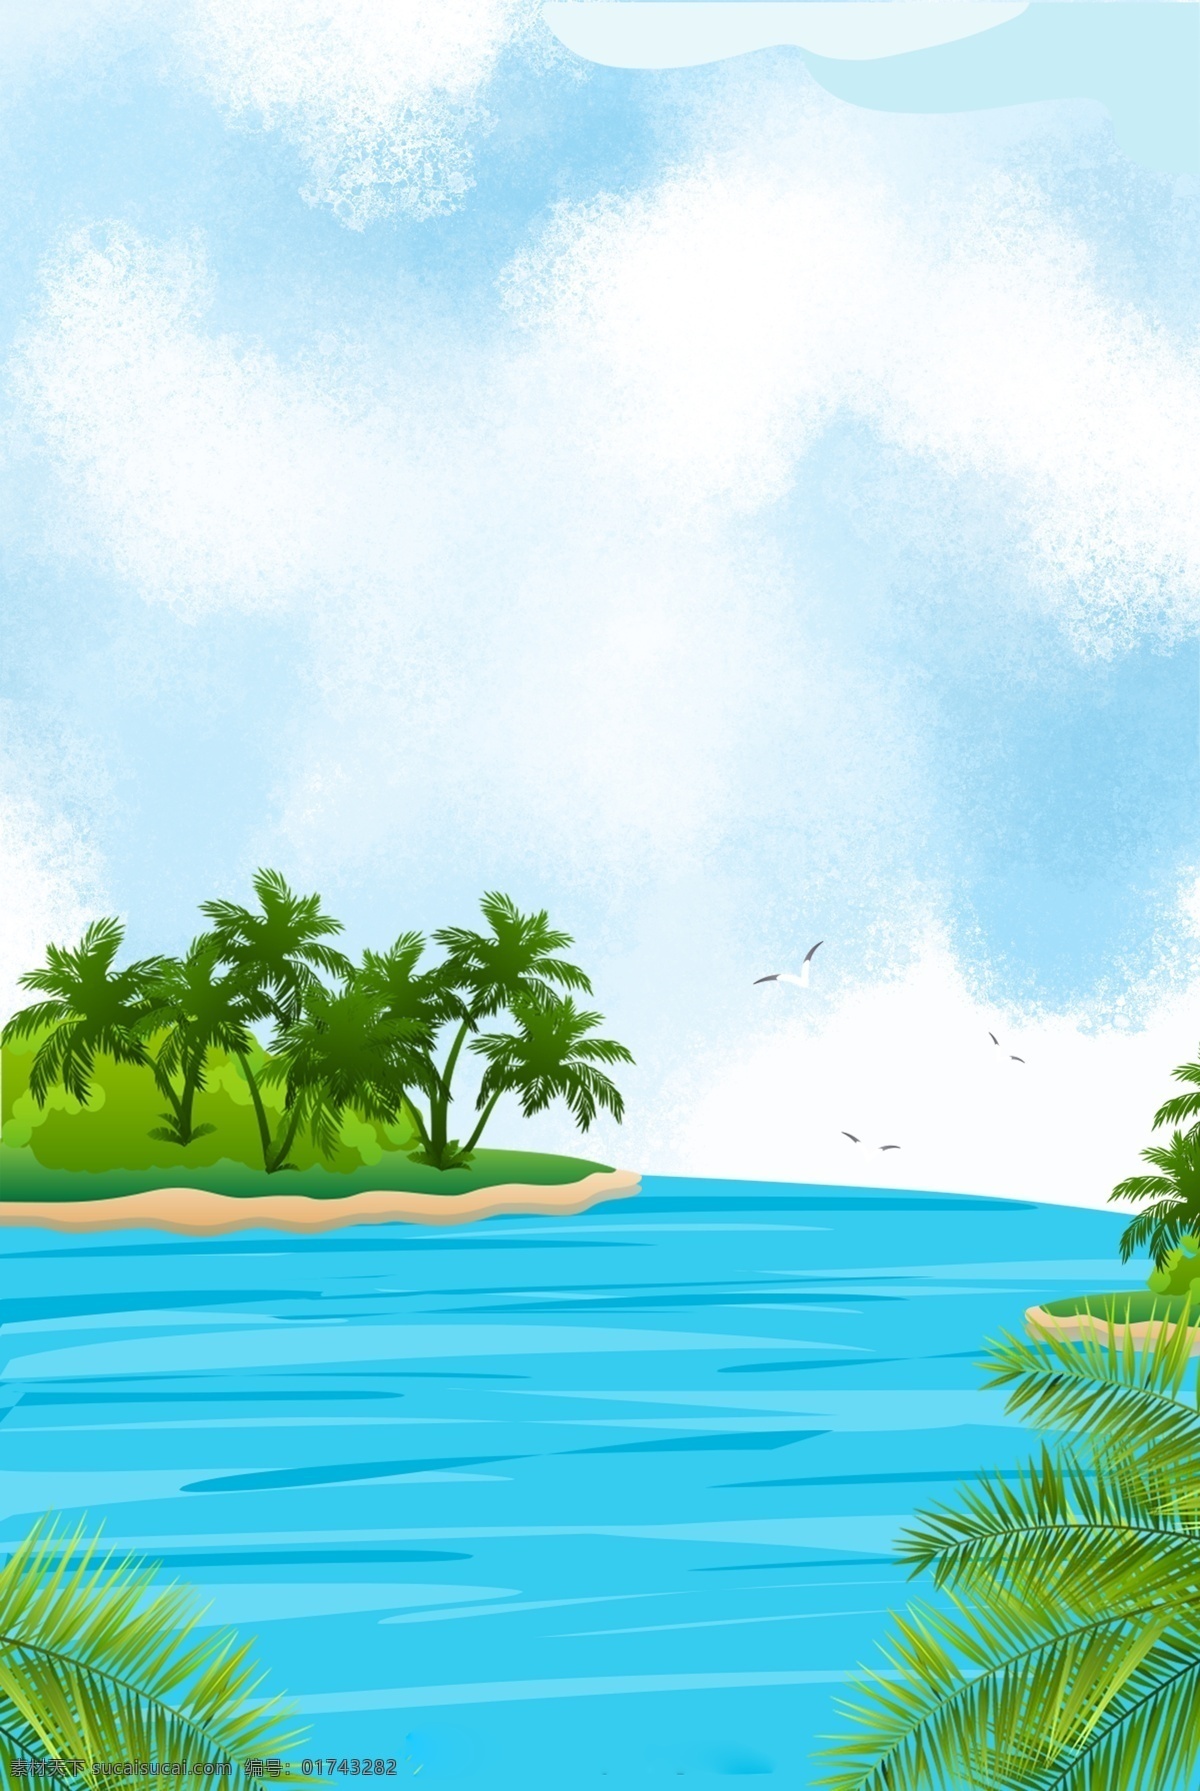 蓝天 大海 简约 背景 凉爽的 椰子树 美丽的 遮阳篷 假日 卡通 夏天 太阳 夏天海边 沙滩 度假